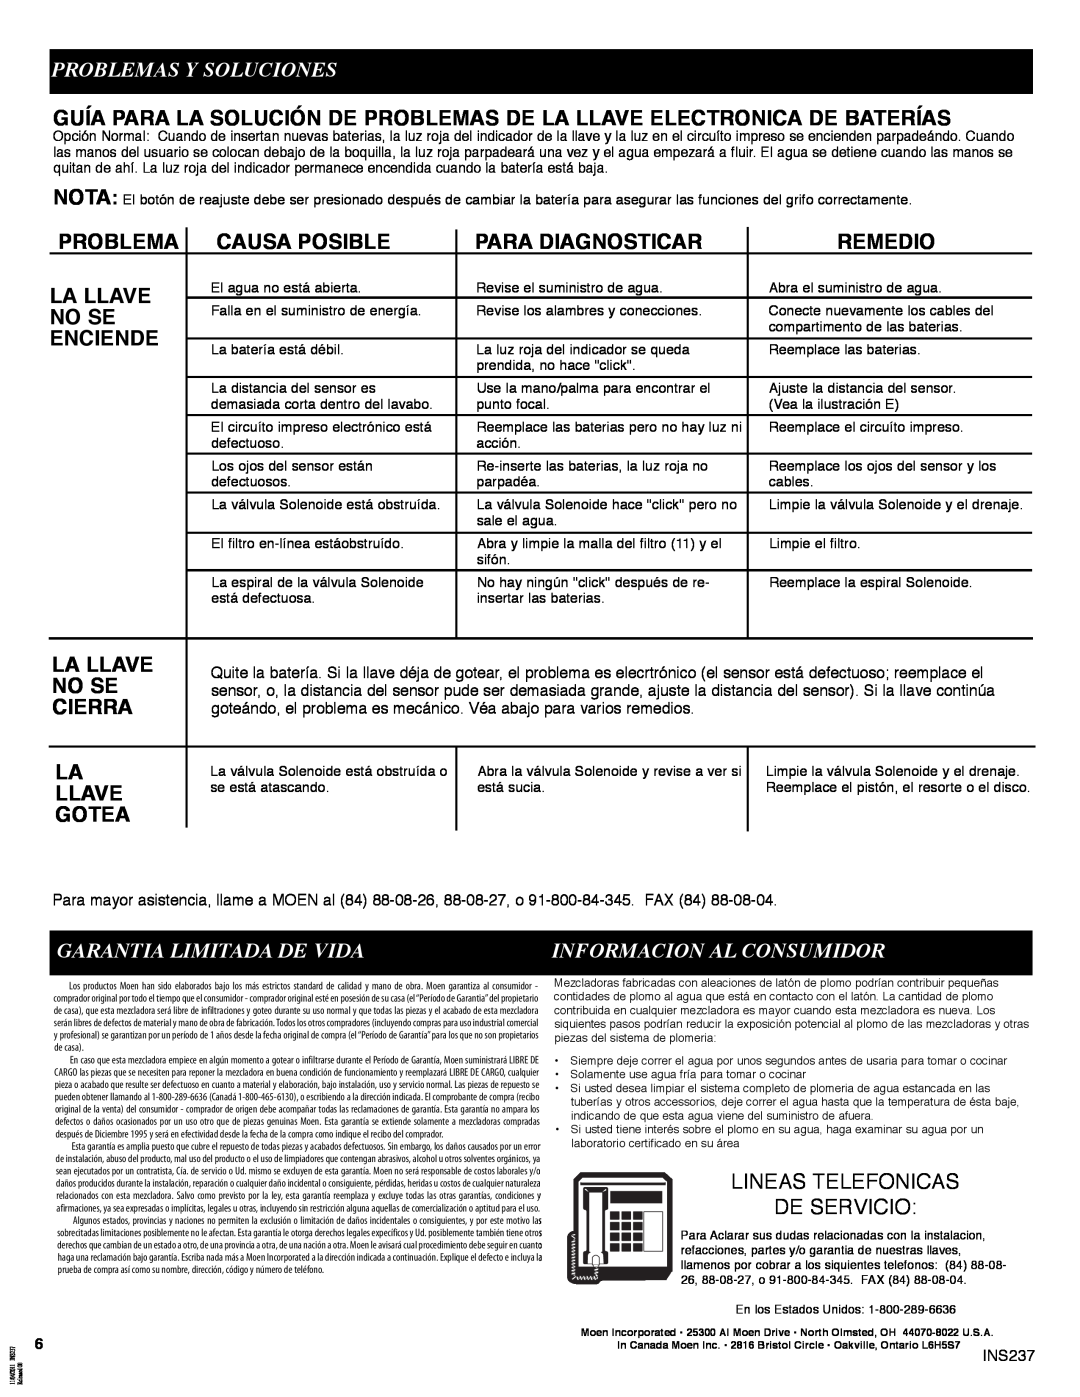 Moen 8301 manual Problemas Y Soluciones, Garantia Limitada De Vida, Lineas Telefonicas De Servicio 